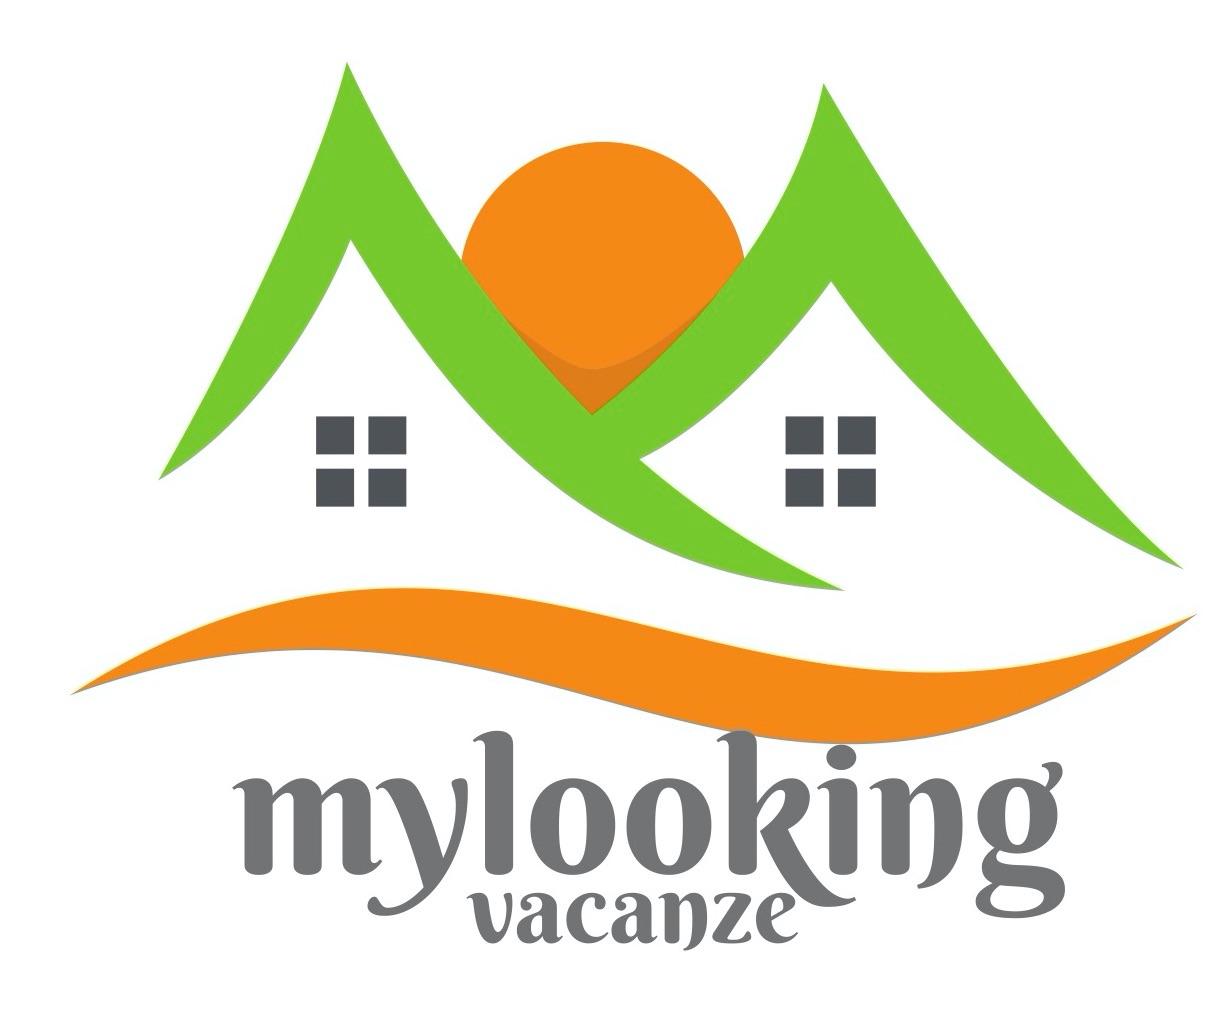 Mylooking vacanze